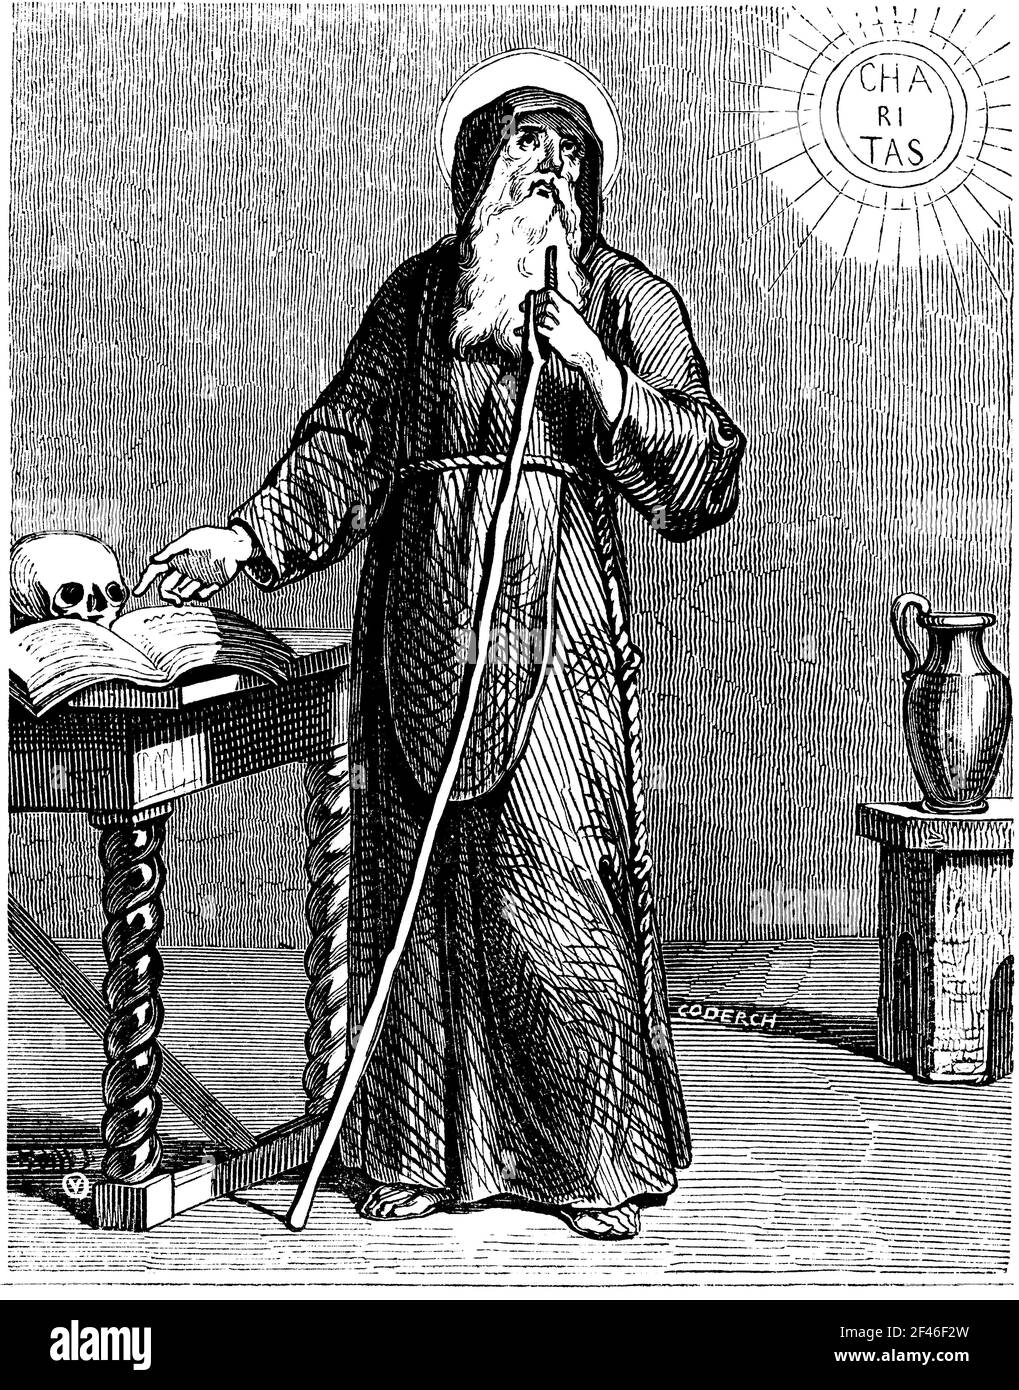 San Francisco de Paula (1416-1507), eremita, fundador de la Orden de los Mínimos y santo italiano de la Iglesia católica. Grabado de 1852. Stock Photo